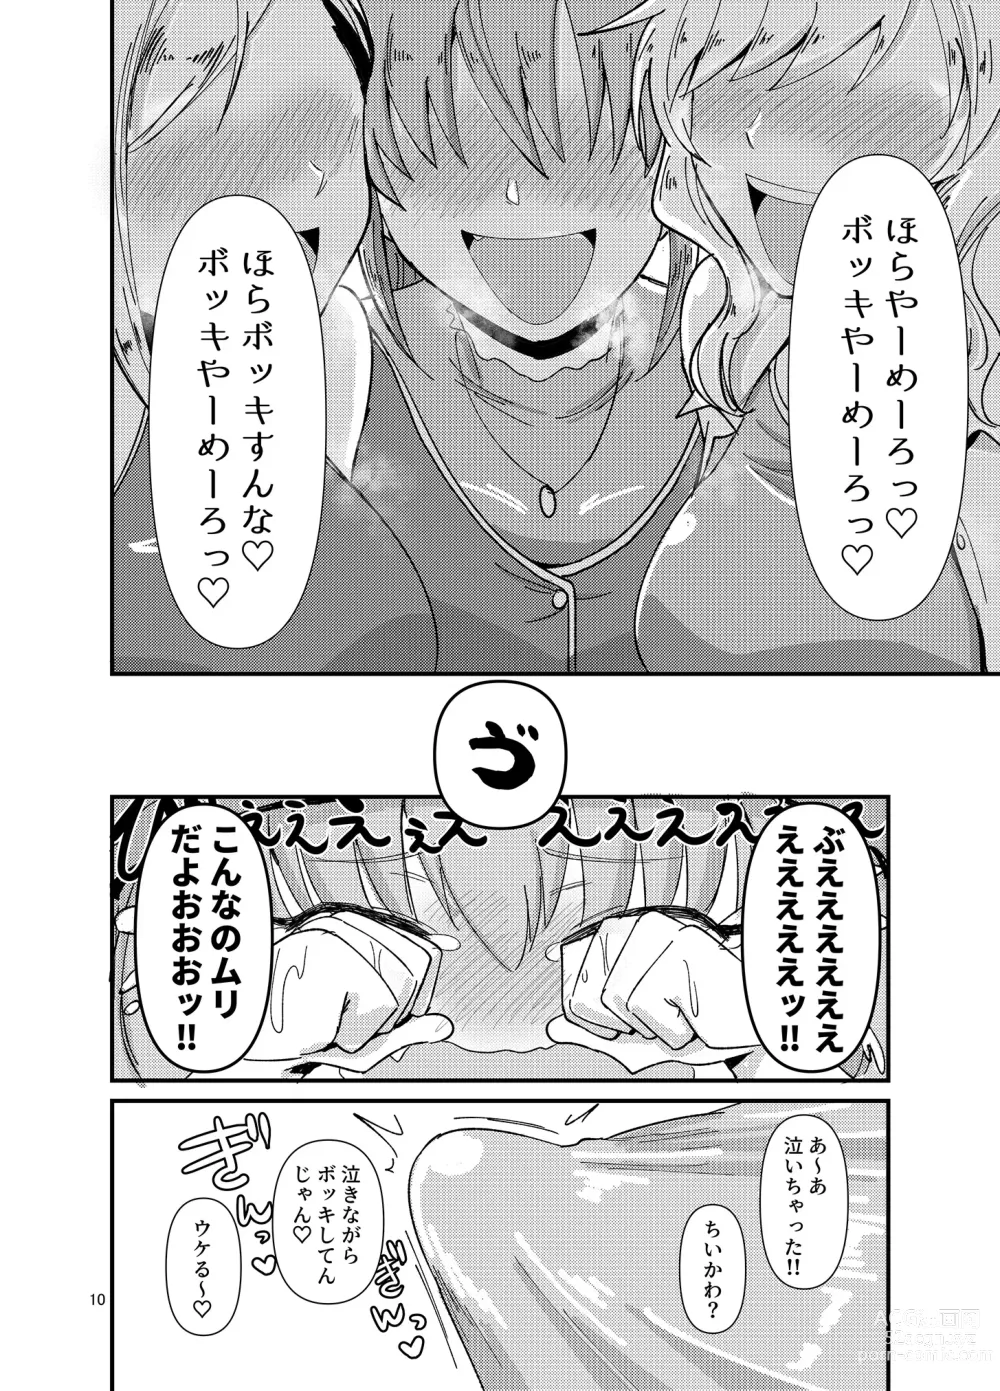 Page 10 of doujinshi Gal shika Tatan!